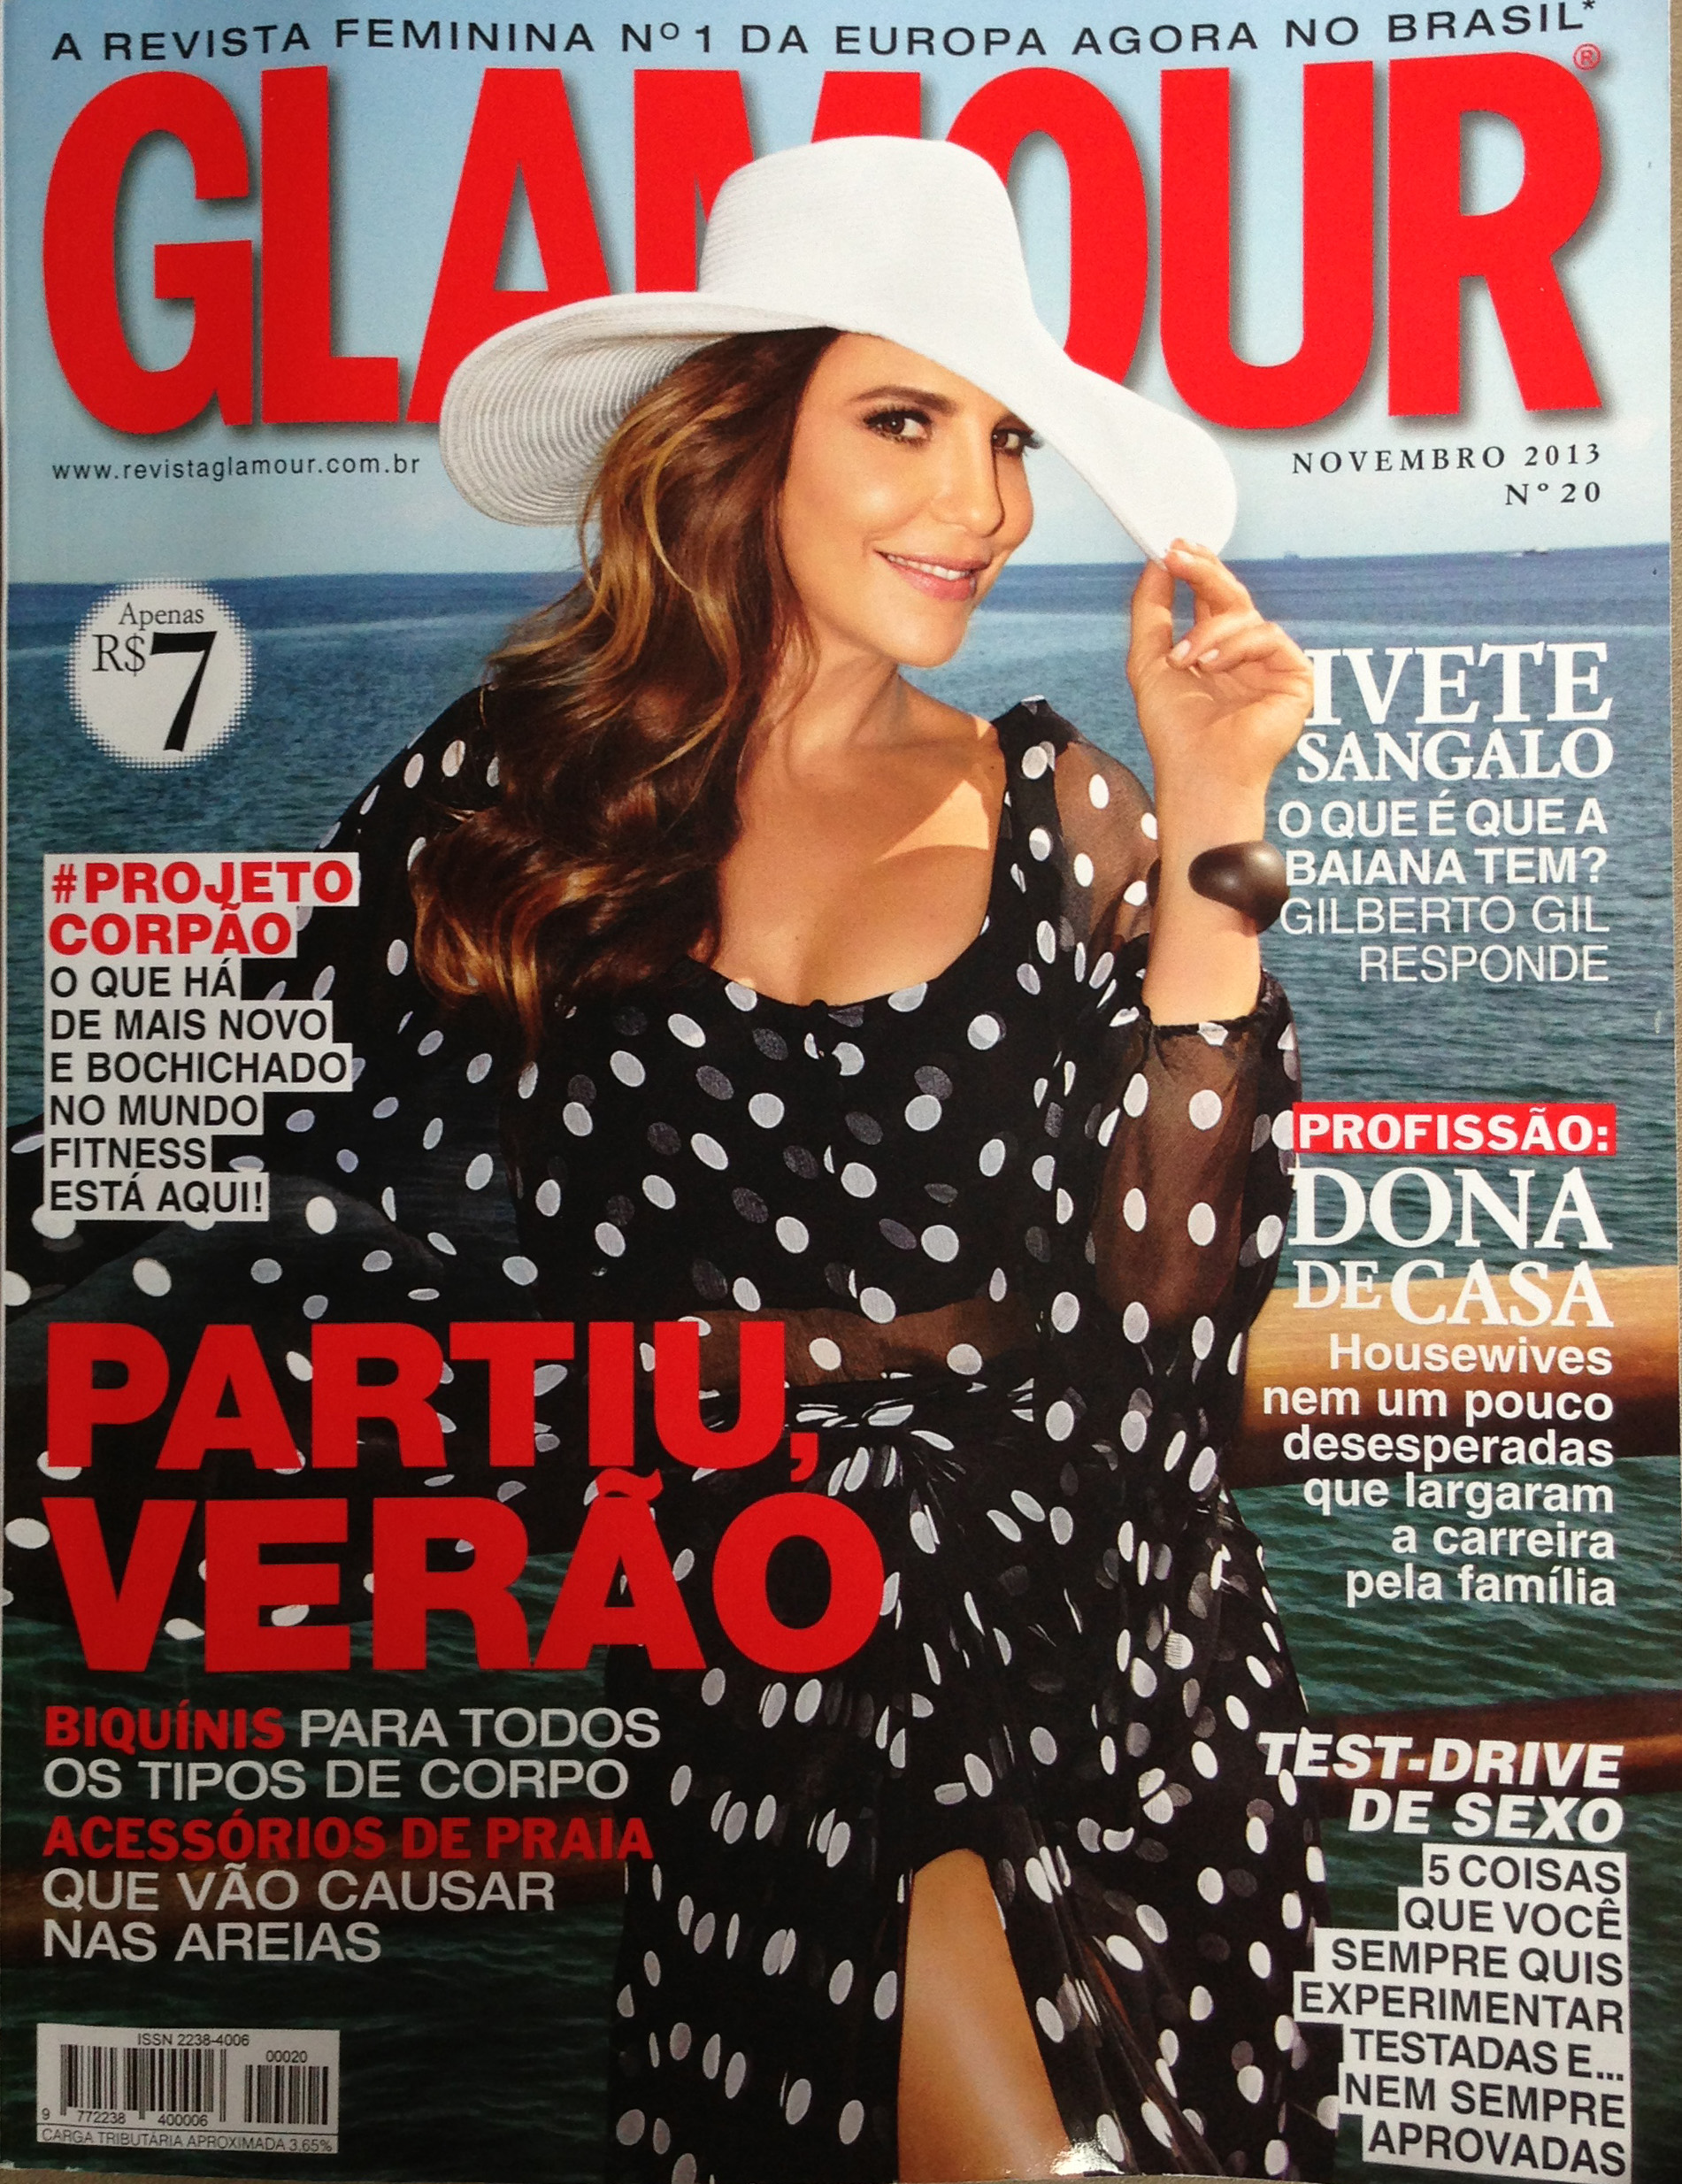 Na Revista Glamour (Novembro 2013) - Blog da Isa Maiolino